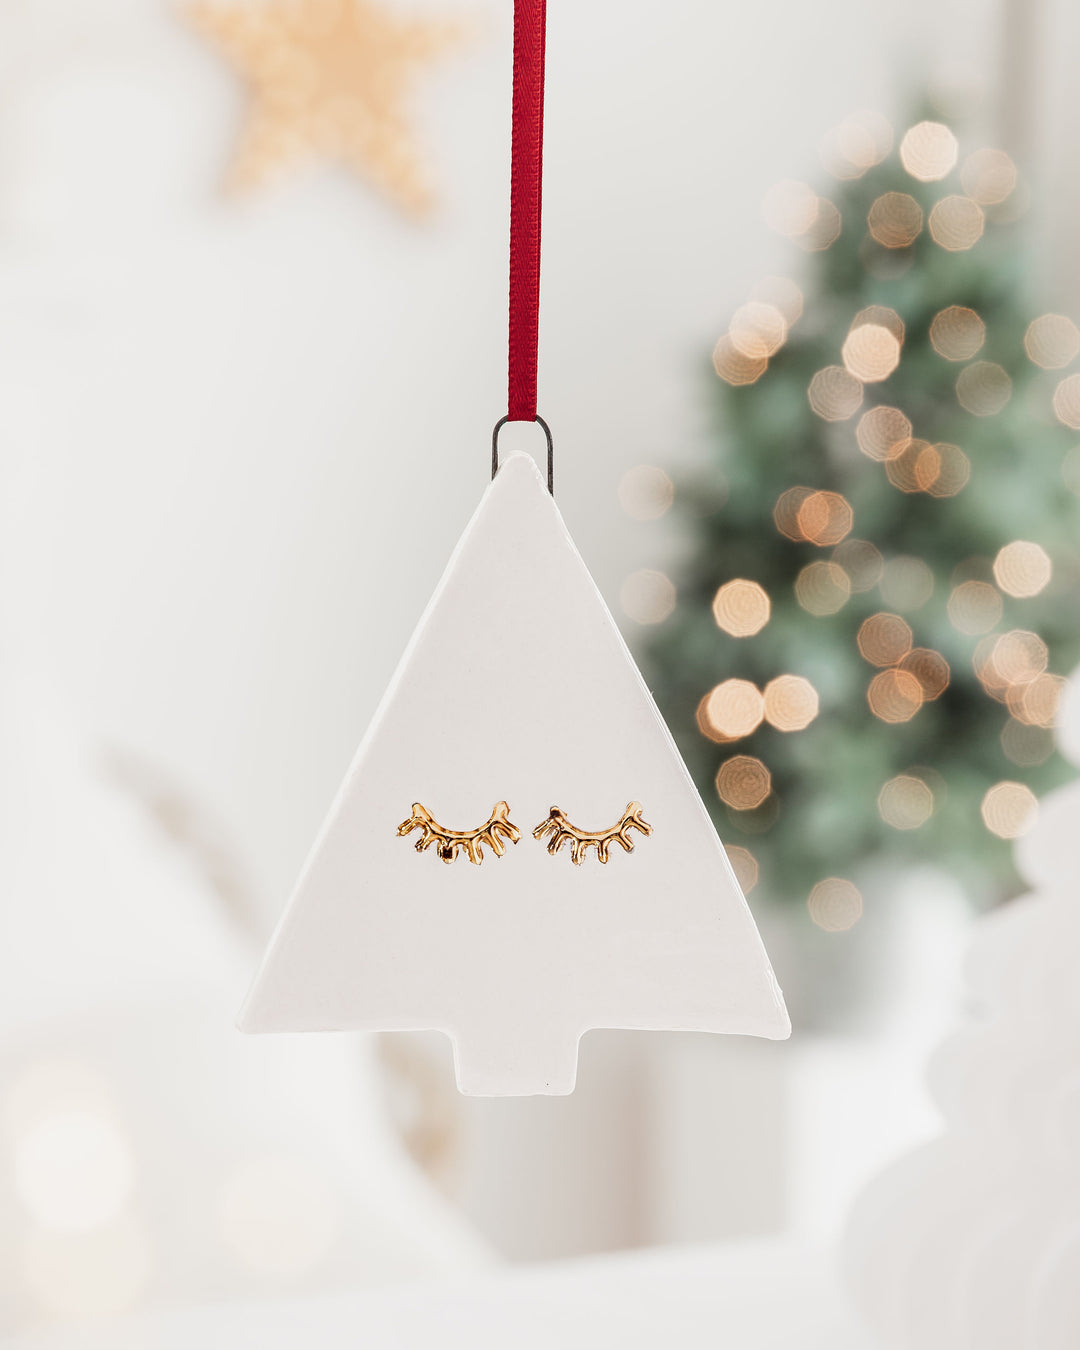 Set of 4 Stylish Christmas Tree Ornaments with 22c Gold Lustre Eyelashes